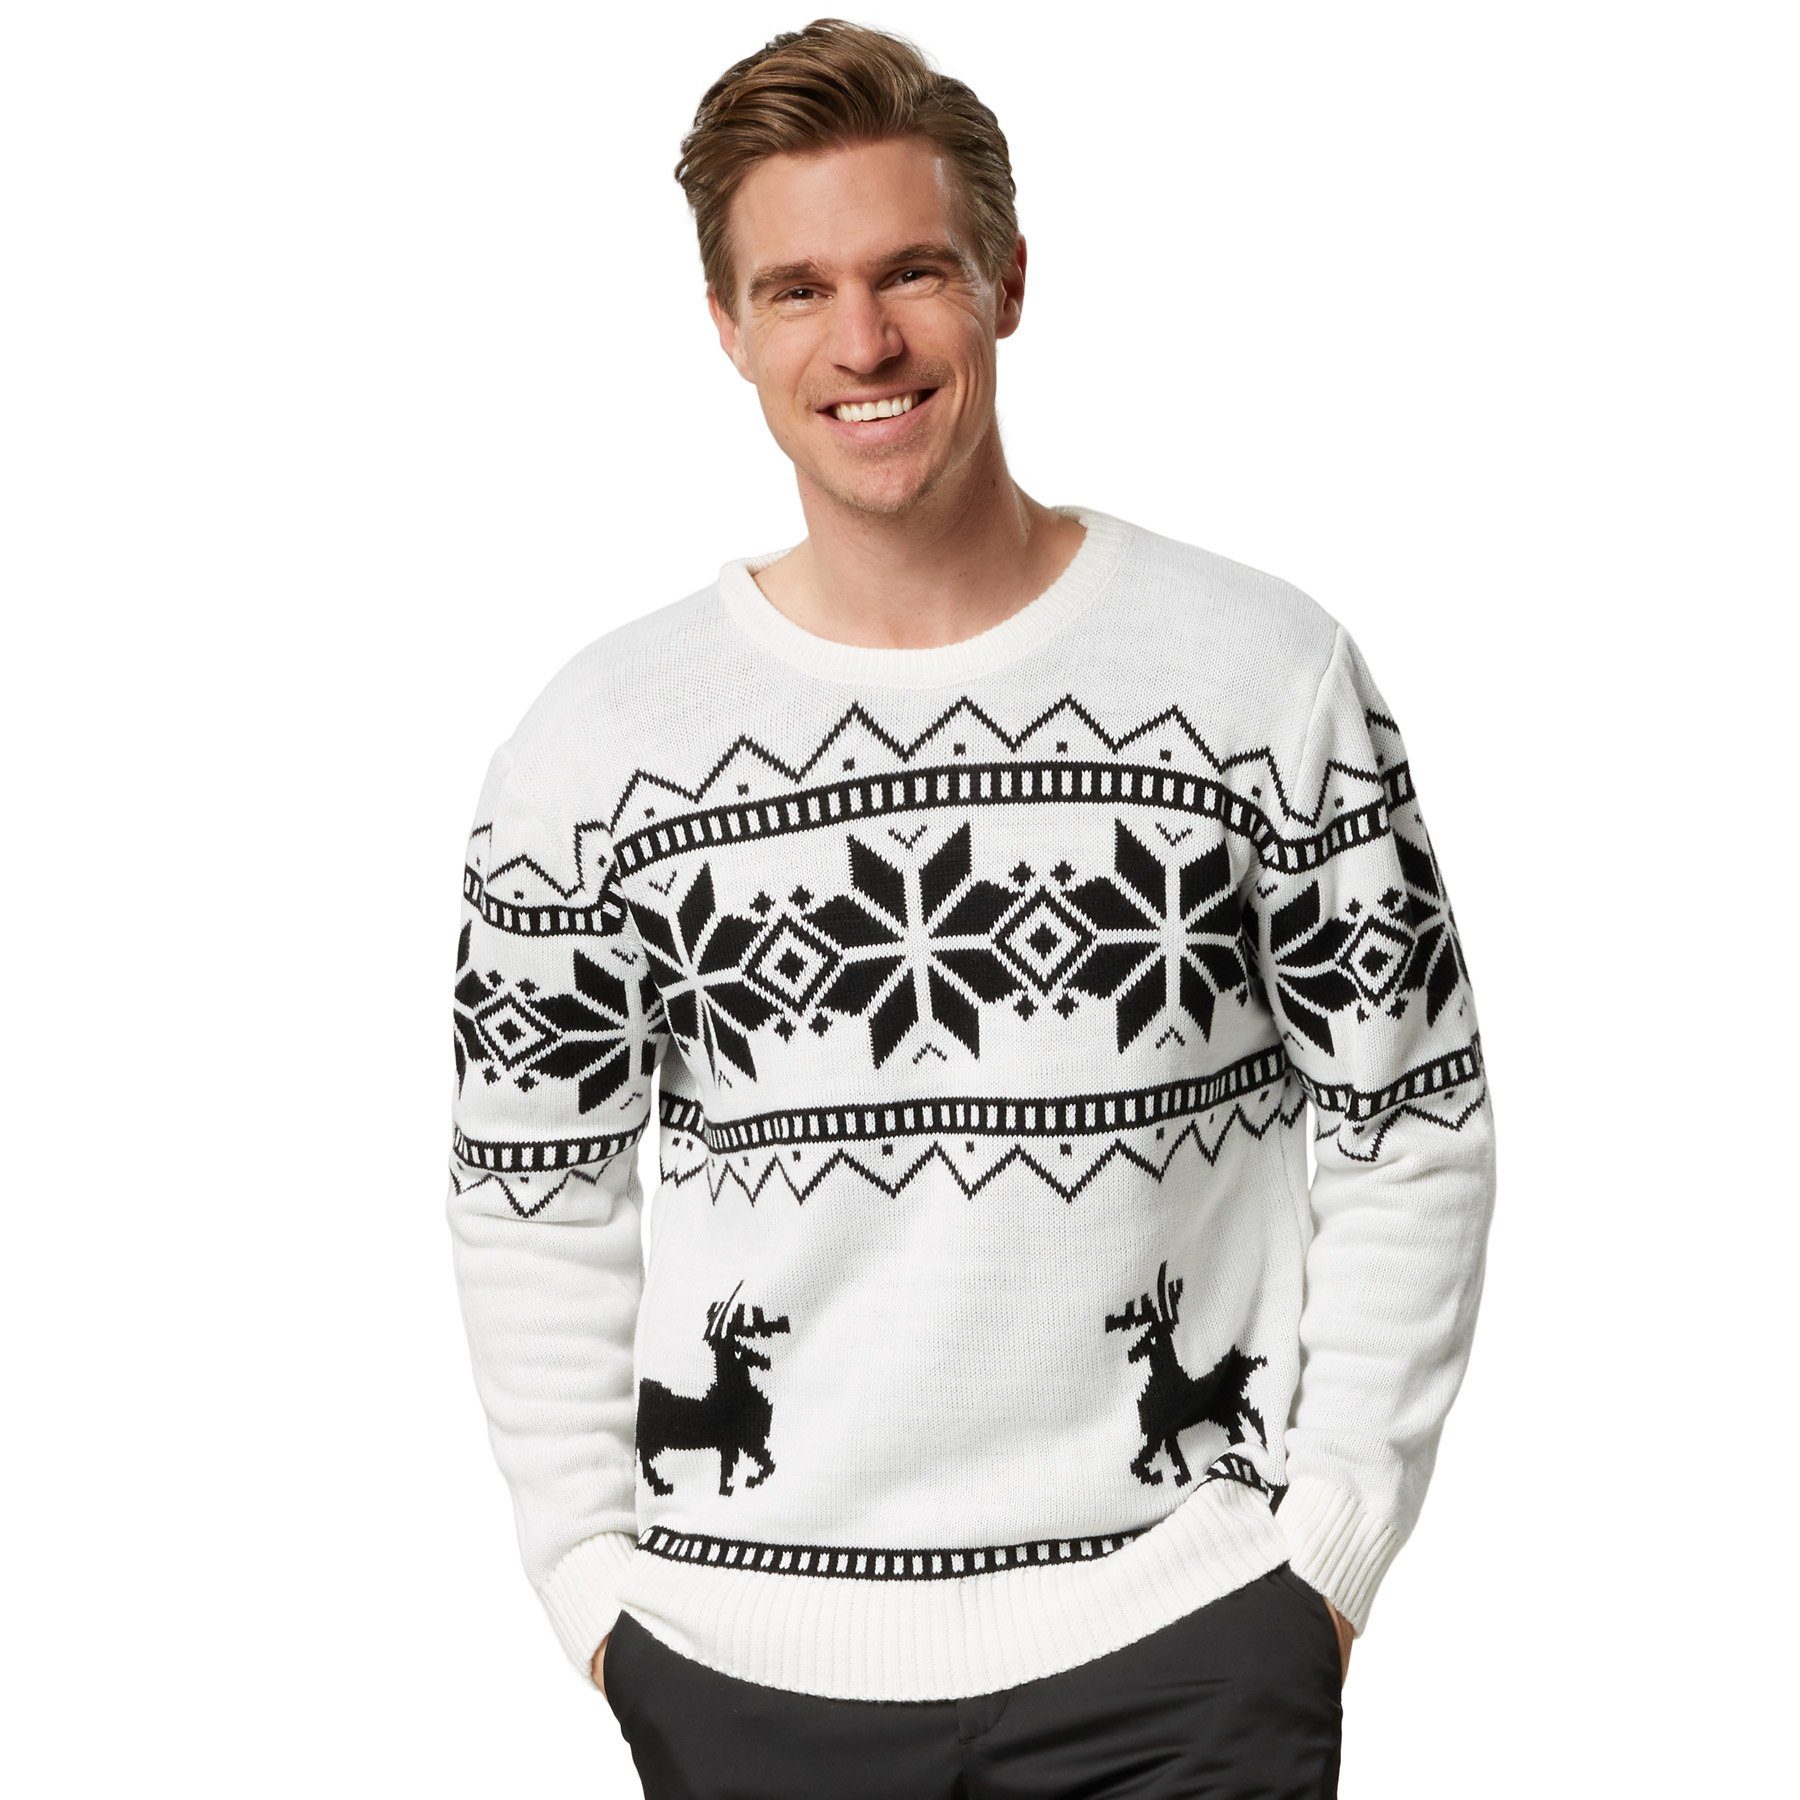 Herren Weihnachtspullover » Christmas Sweater online kaufen | OTTO